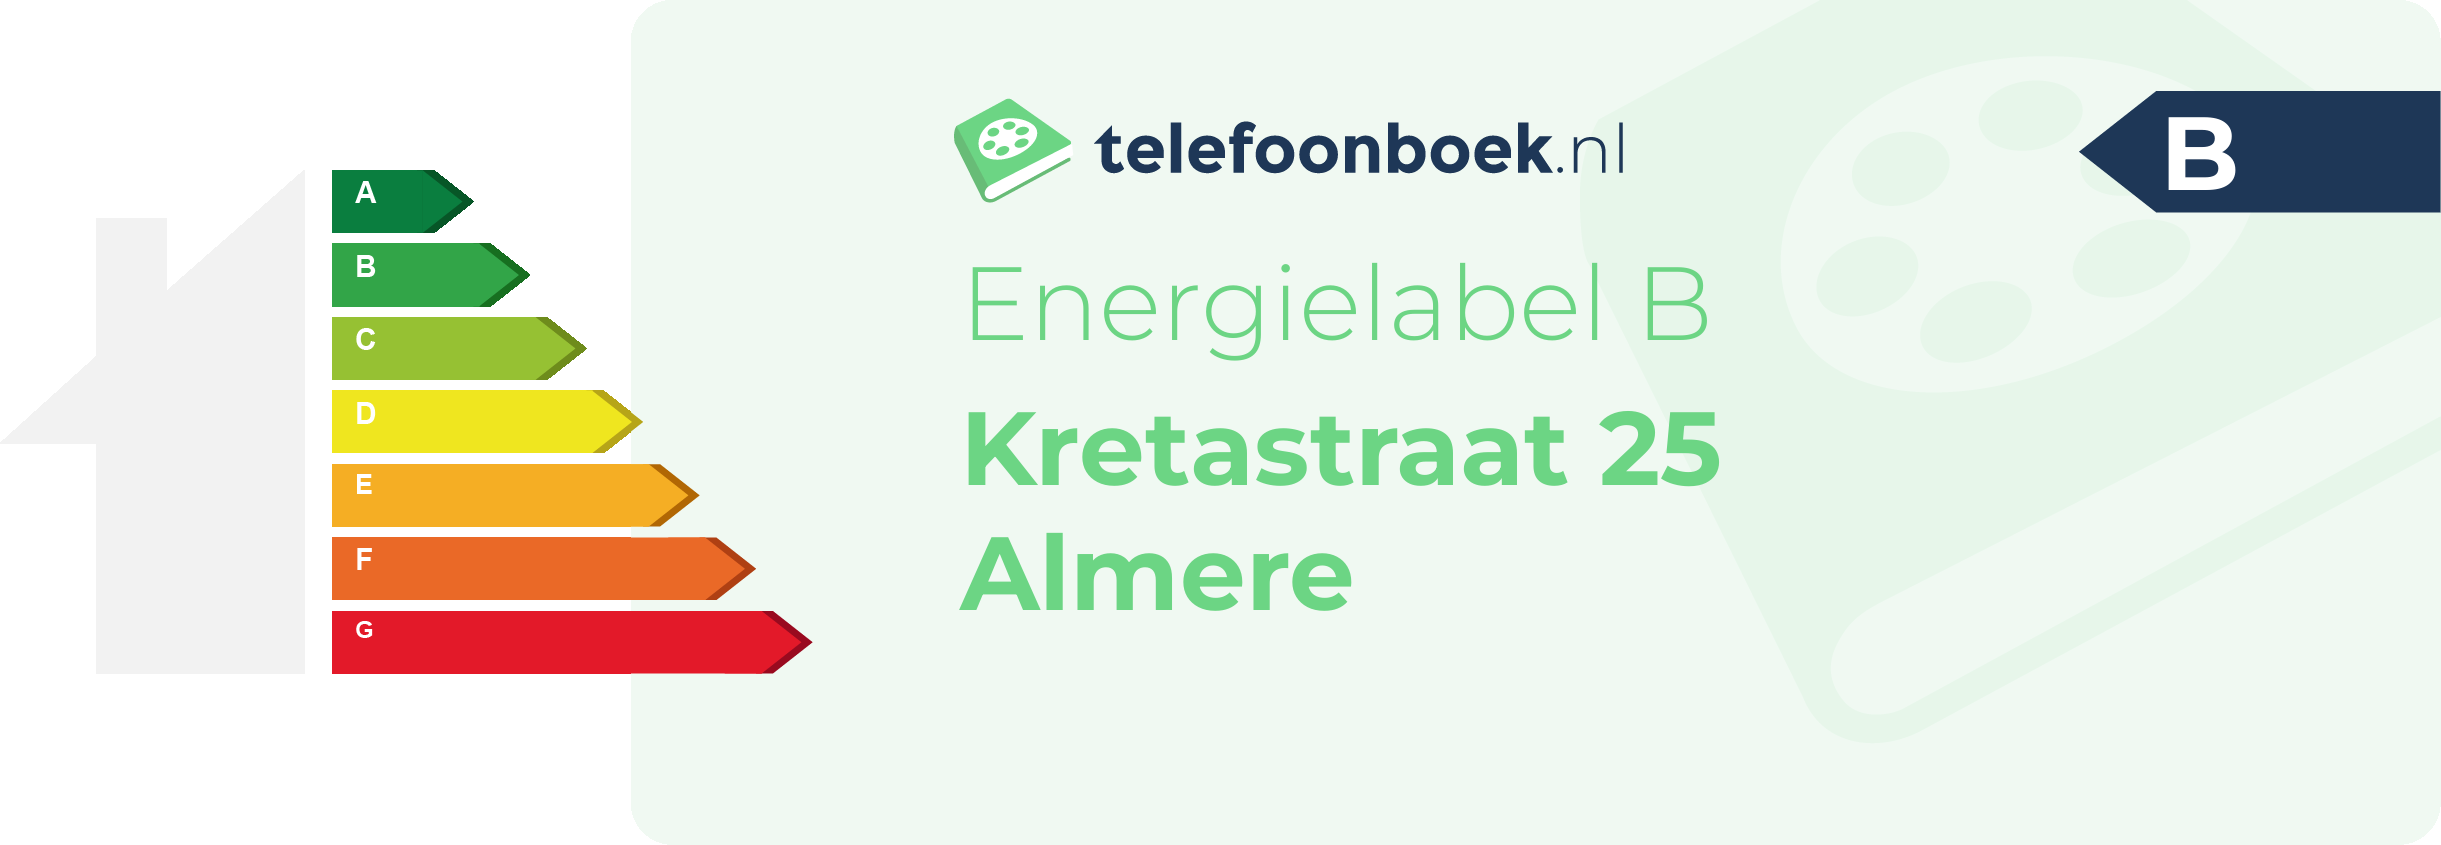 Energielabel Kretastraat 25 Almere